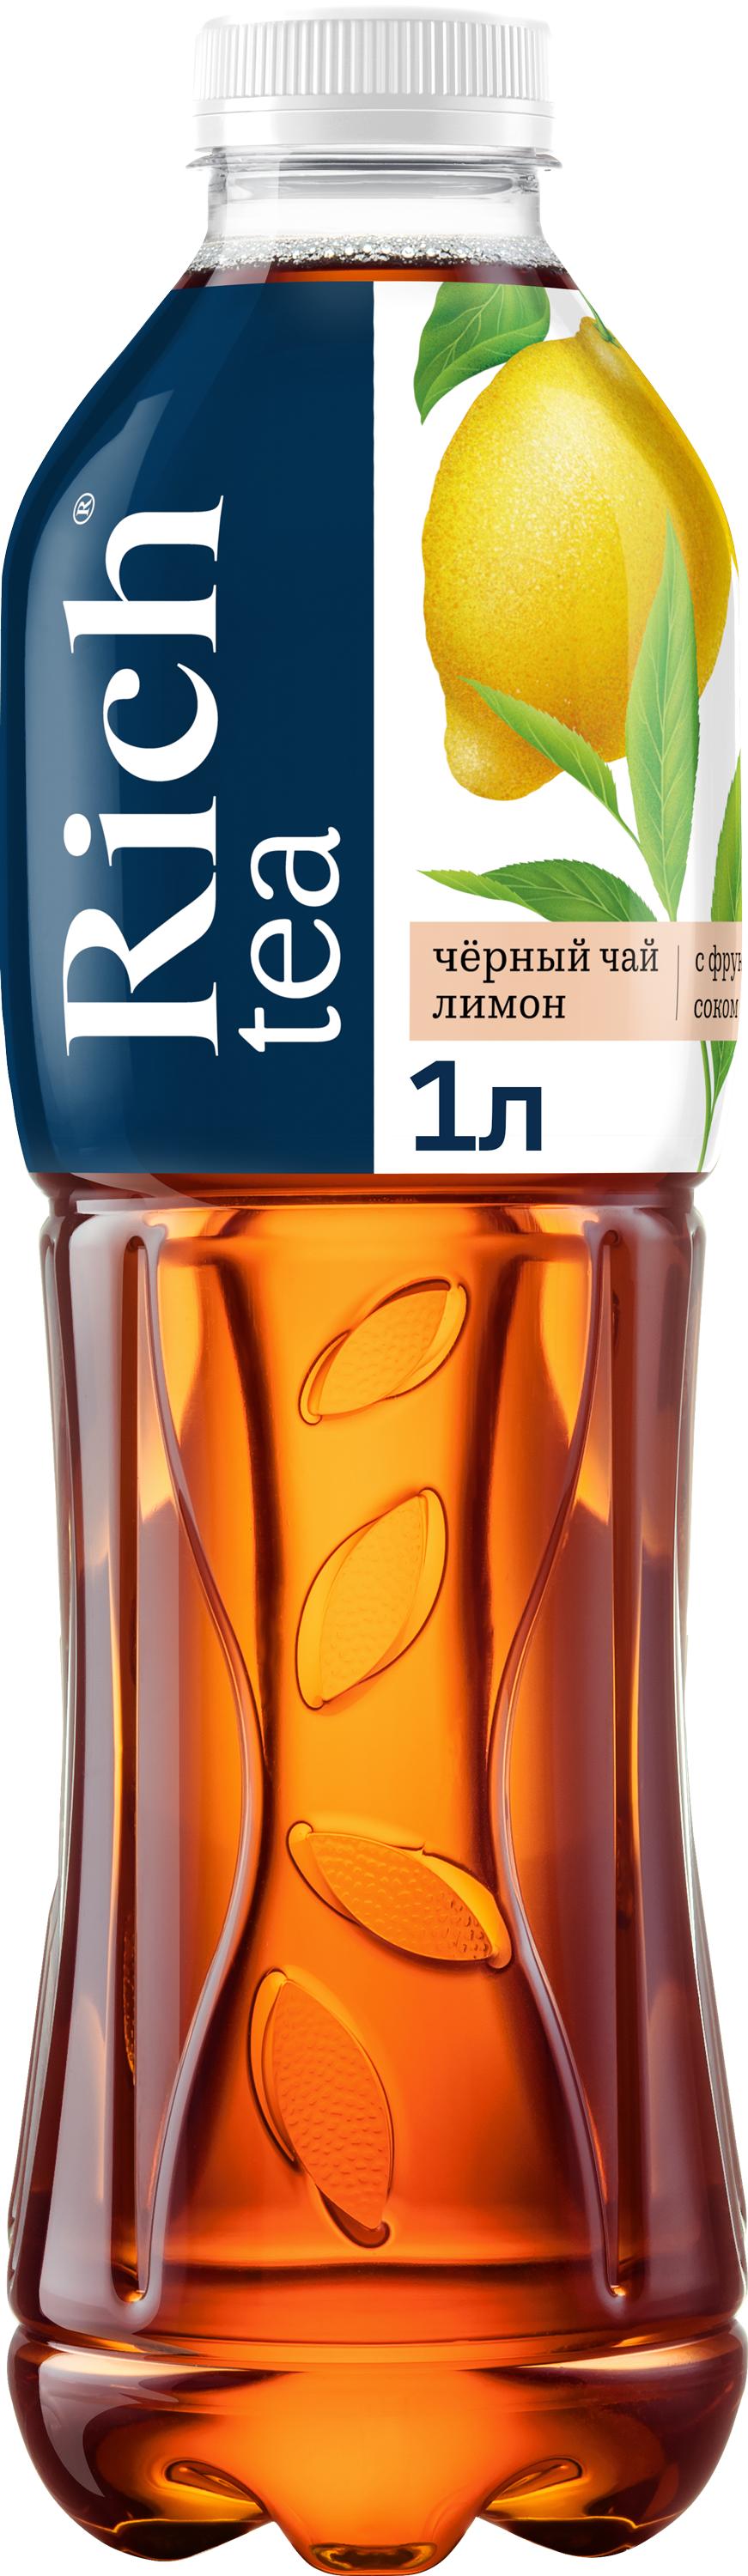 Черный чай Rich tea со вкусом Лимона 1 л., ПЭТ